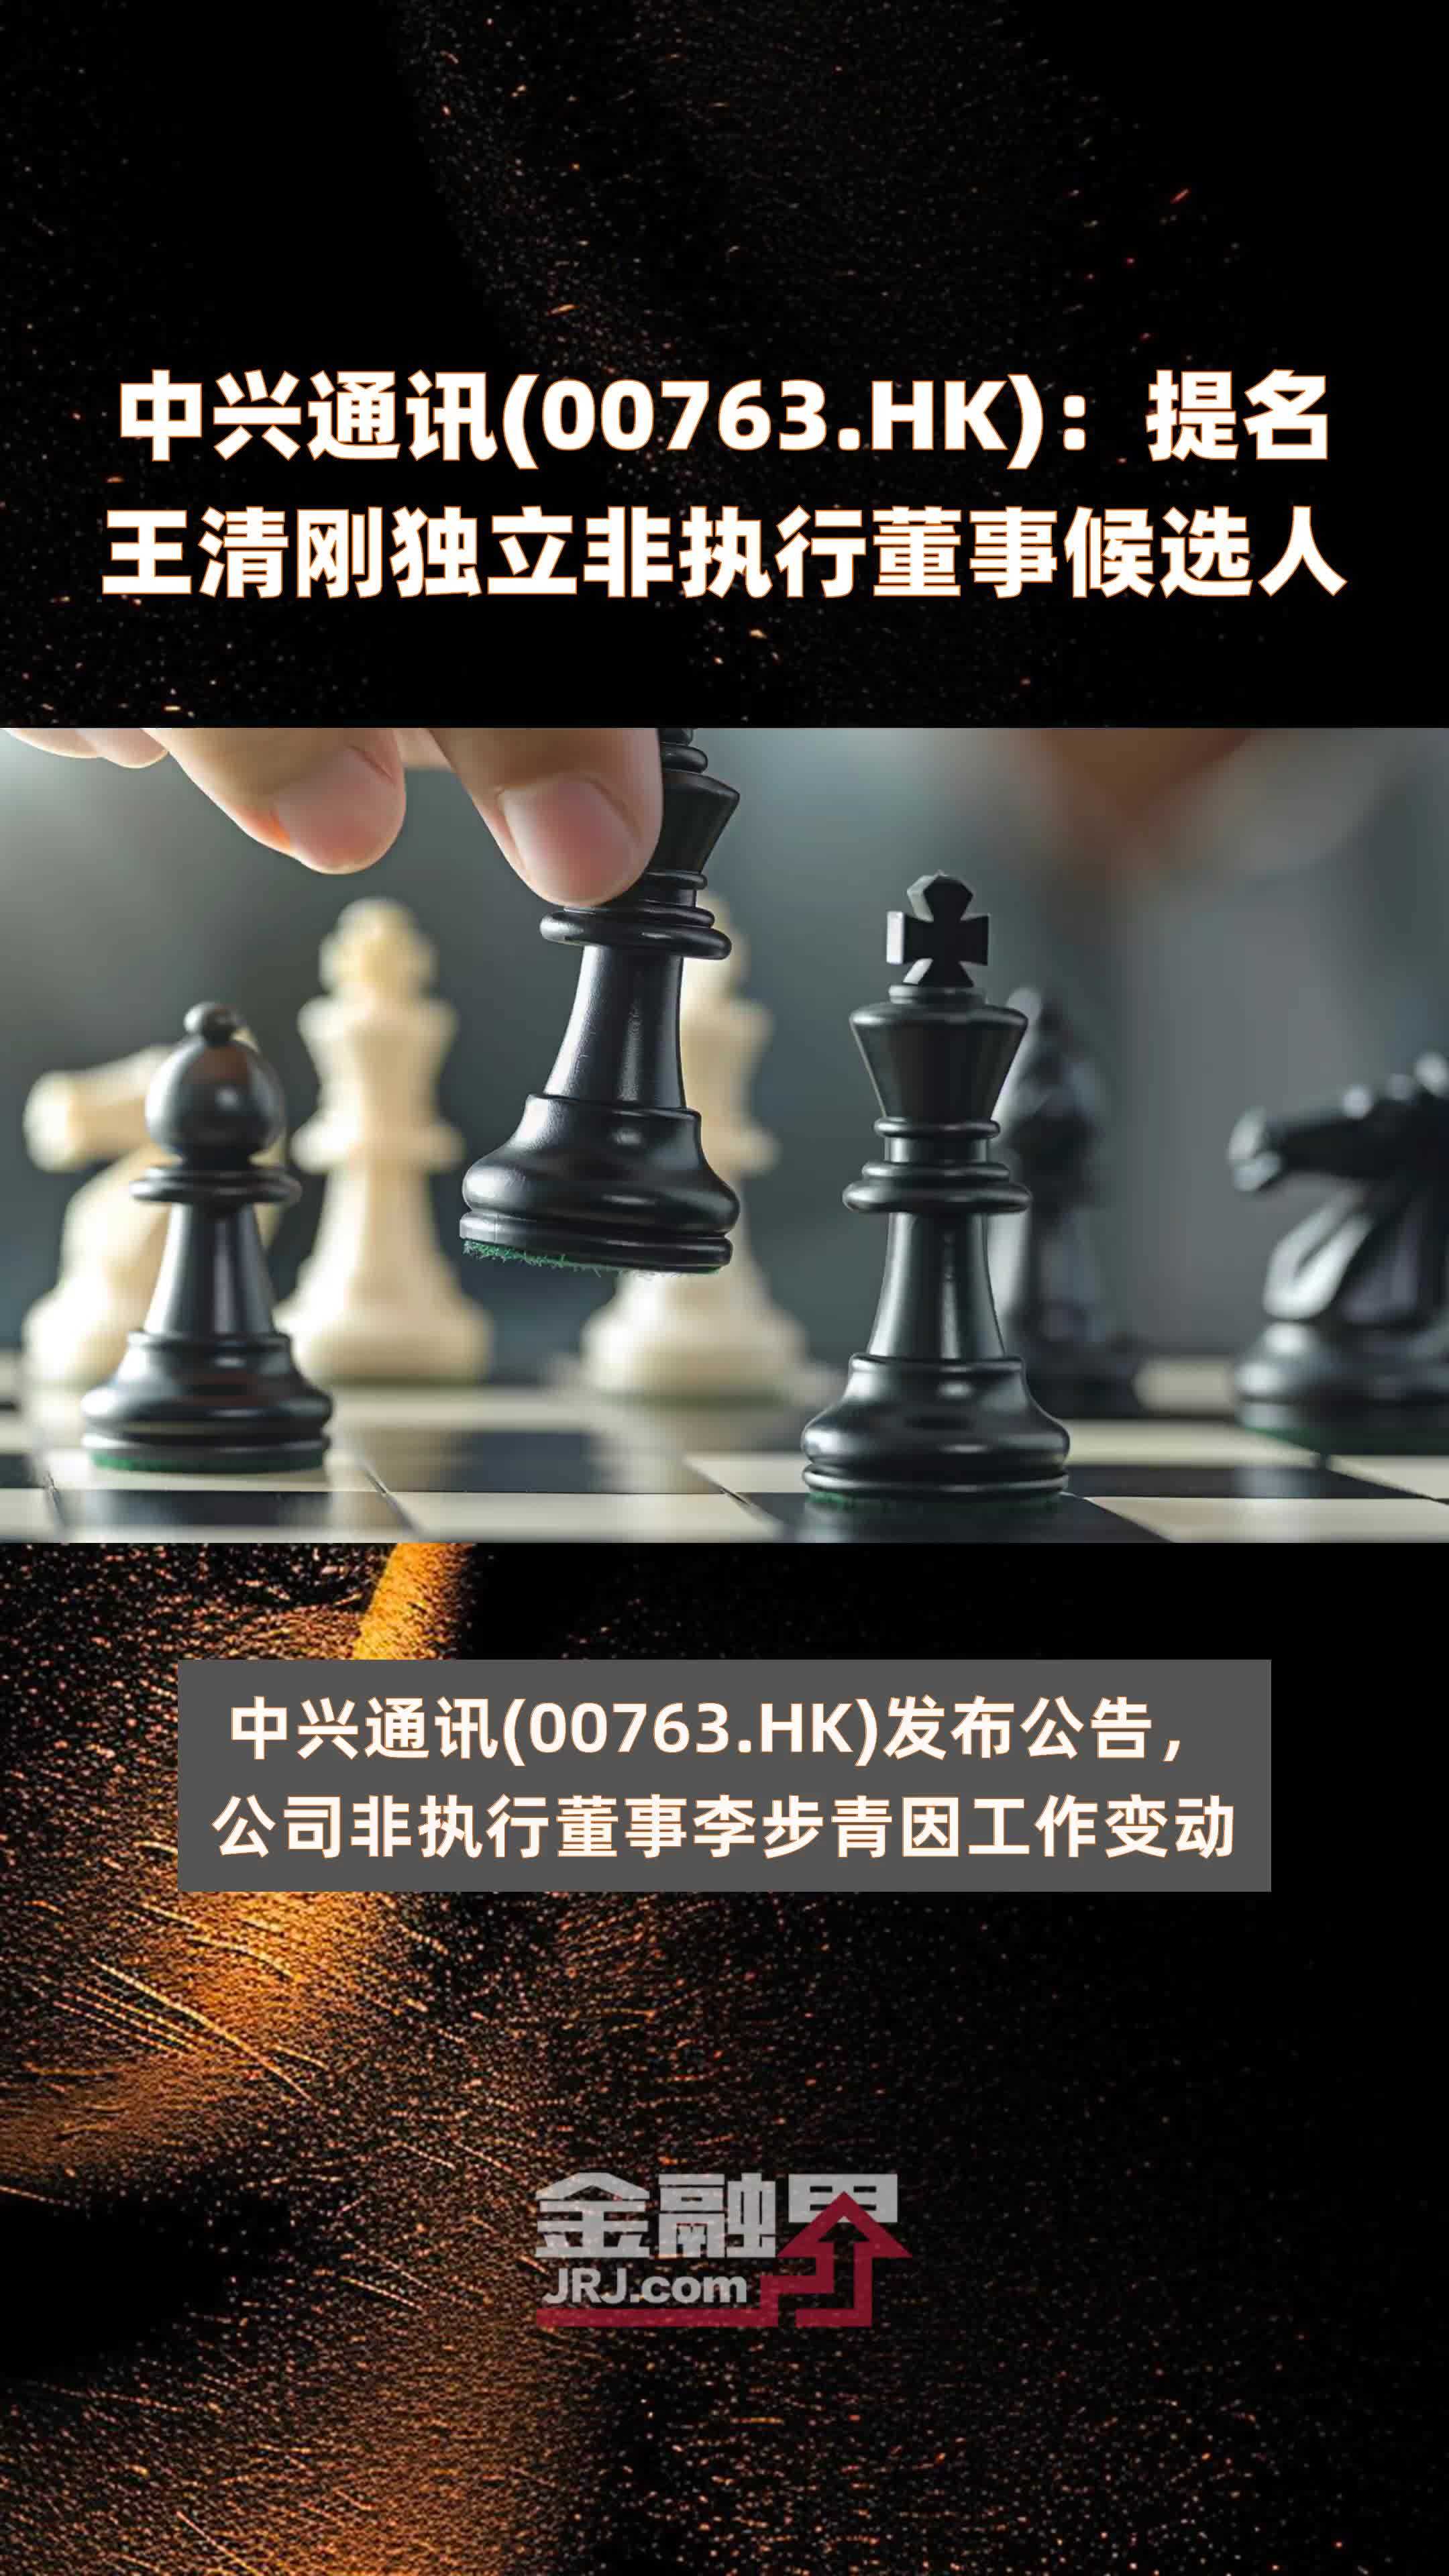 中兴通讯(00763.HK)：提名王清刚独立非执行董事候选人 |快报